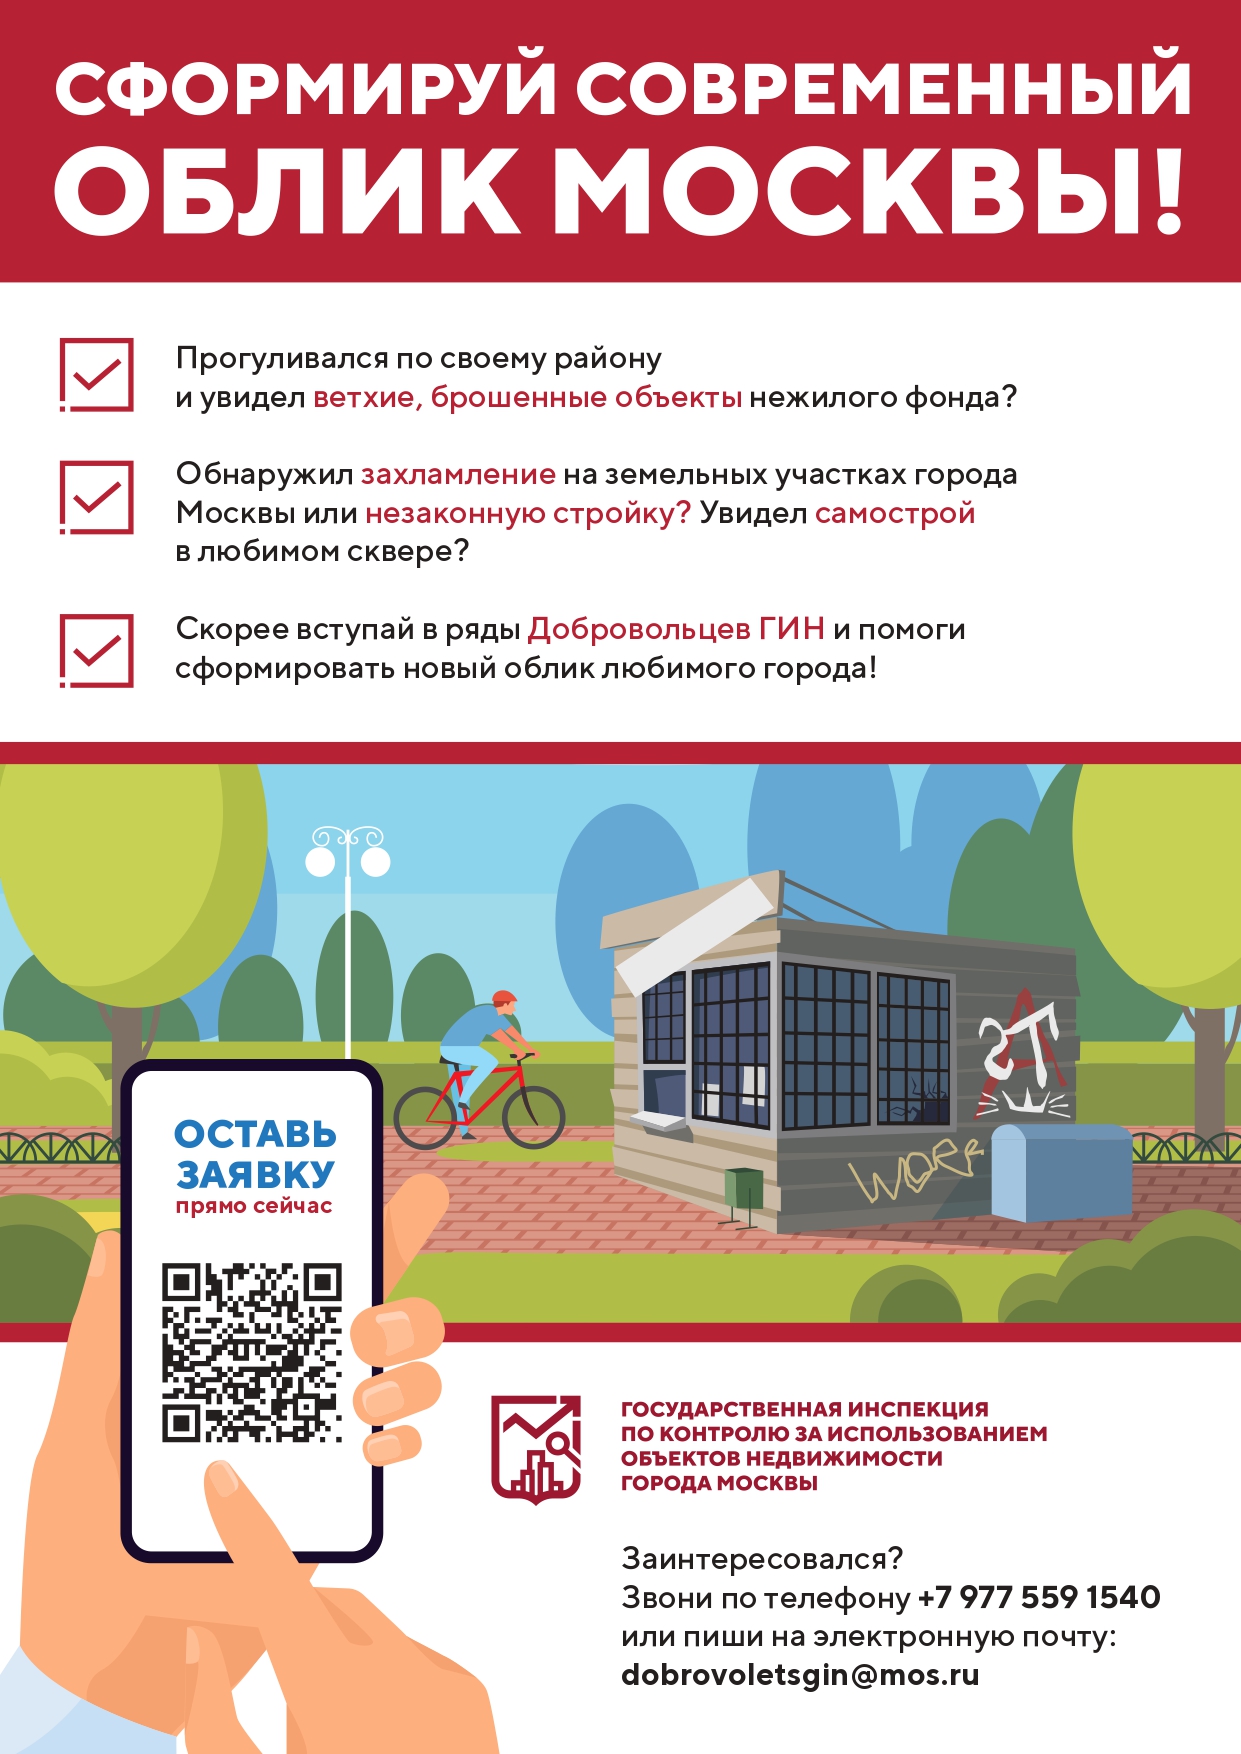 Государственная инспекция по контролю за использованием объектов недвижимости города Москвы реализует приоритетный проект «Доброволец ГИН»